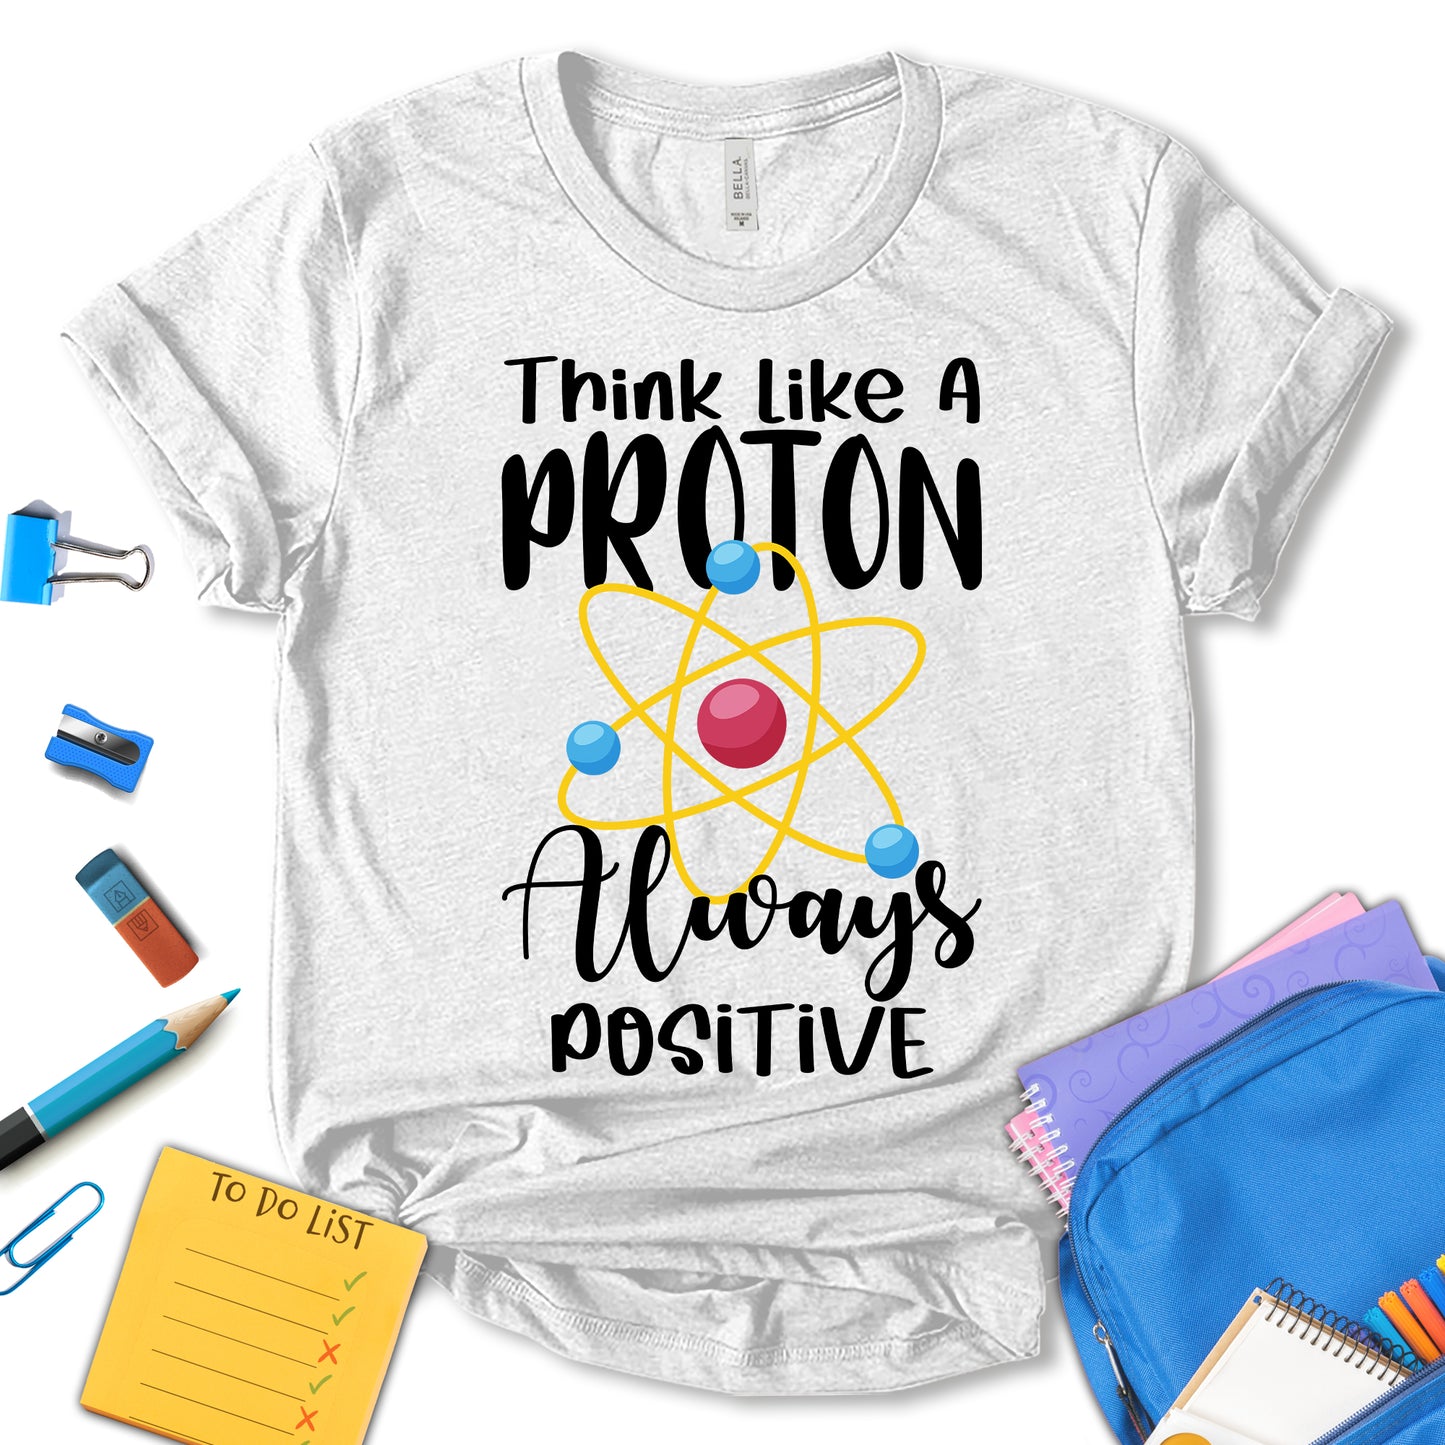 Think Like A Proton Always Positive Shirt, Positive Shirt, Science Teacher Shirt, Teacher Appreciation Shirt, Funny Teacher Shirt, School Shirt, Motivation Shirt, Gift For Teacher, Unisex T-shirt